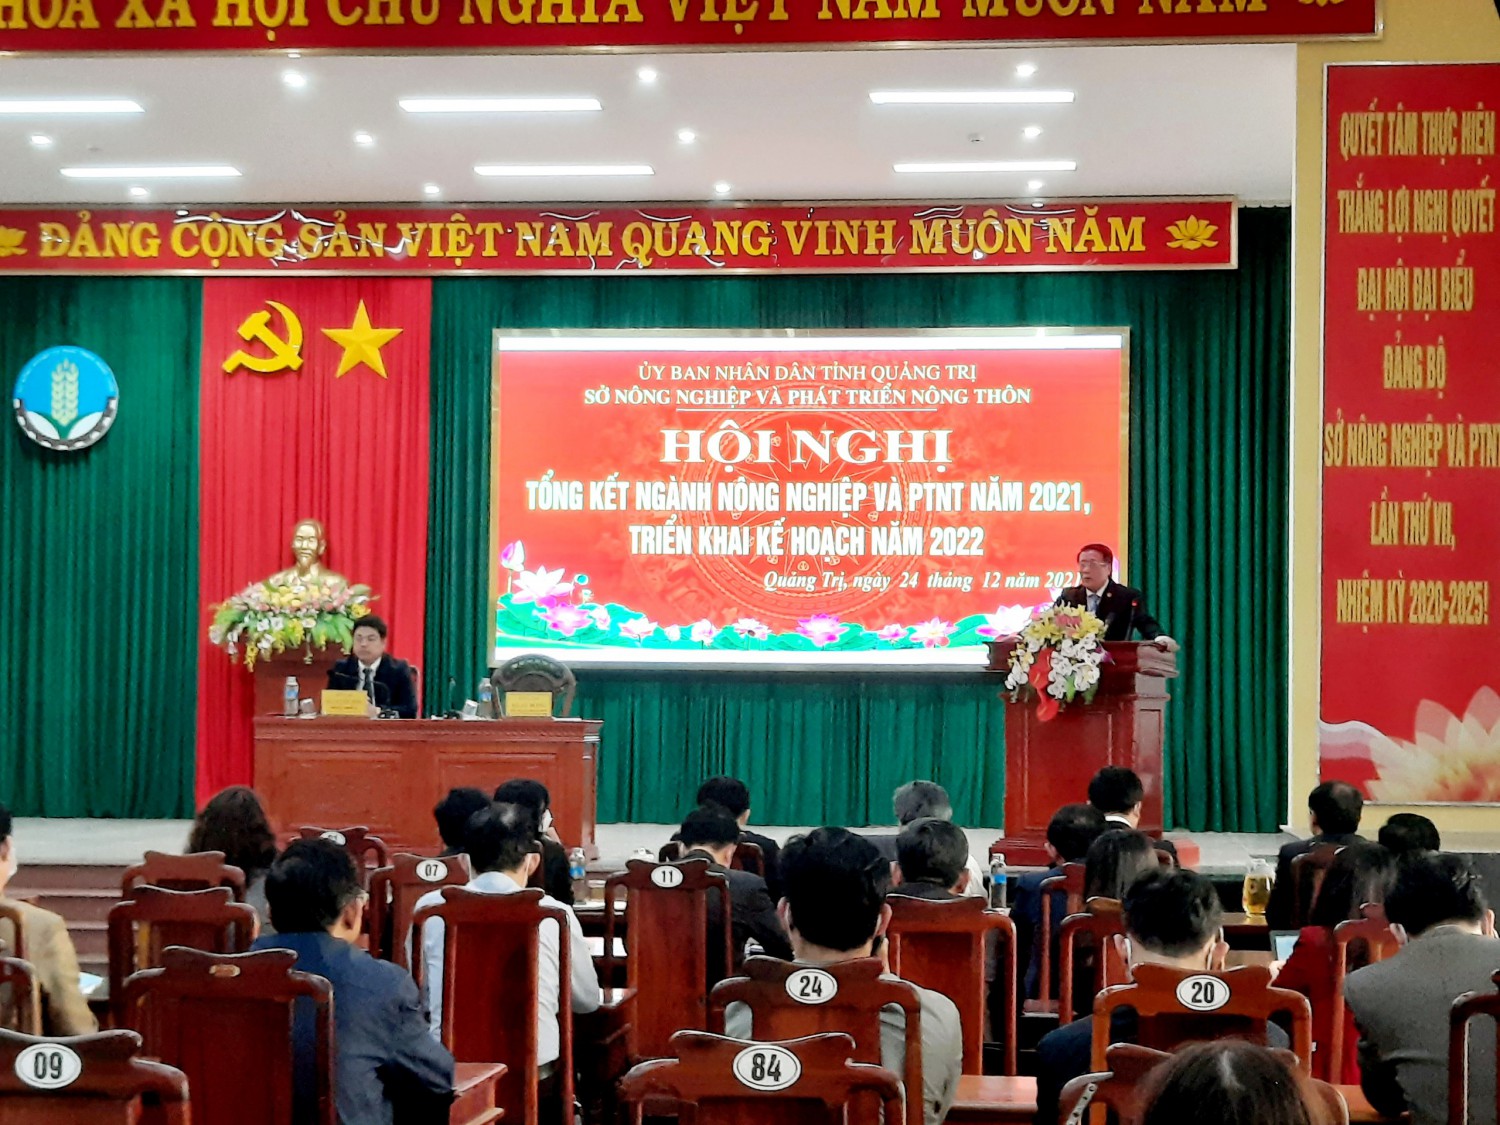 Phó chủ tịch Thường trực UBND tỉnh Hà Sỹ Đồng, phát biểu chỉ đạo hội nghị